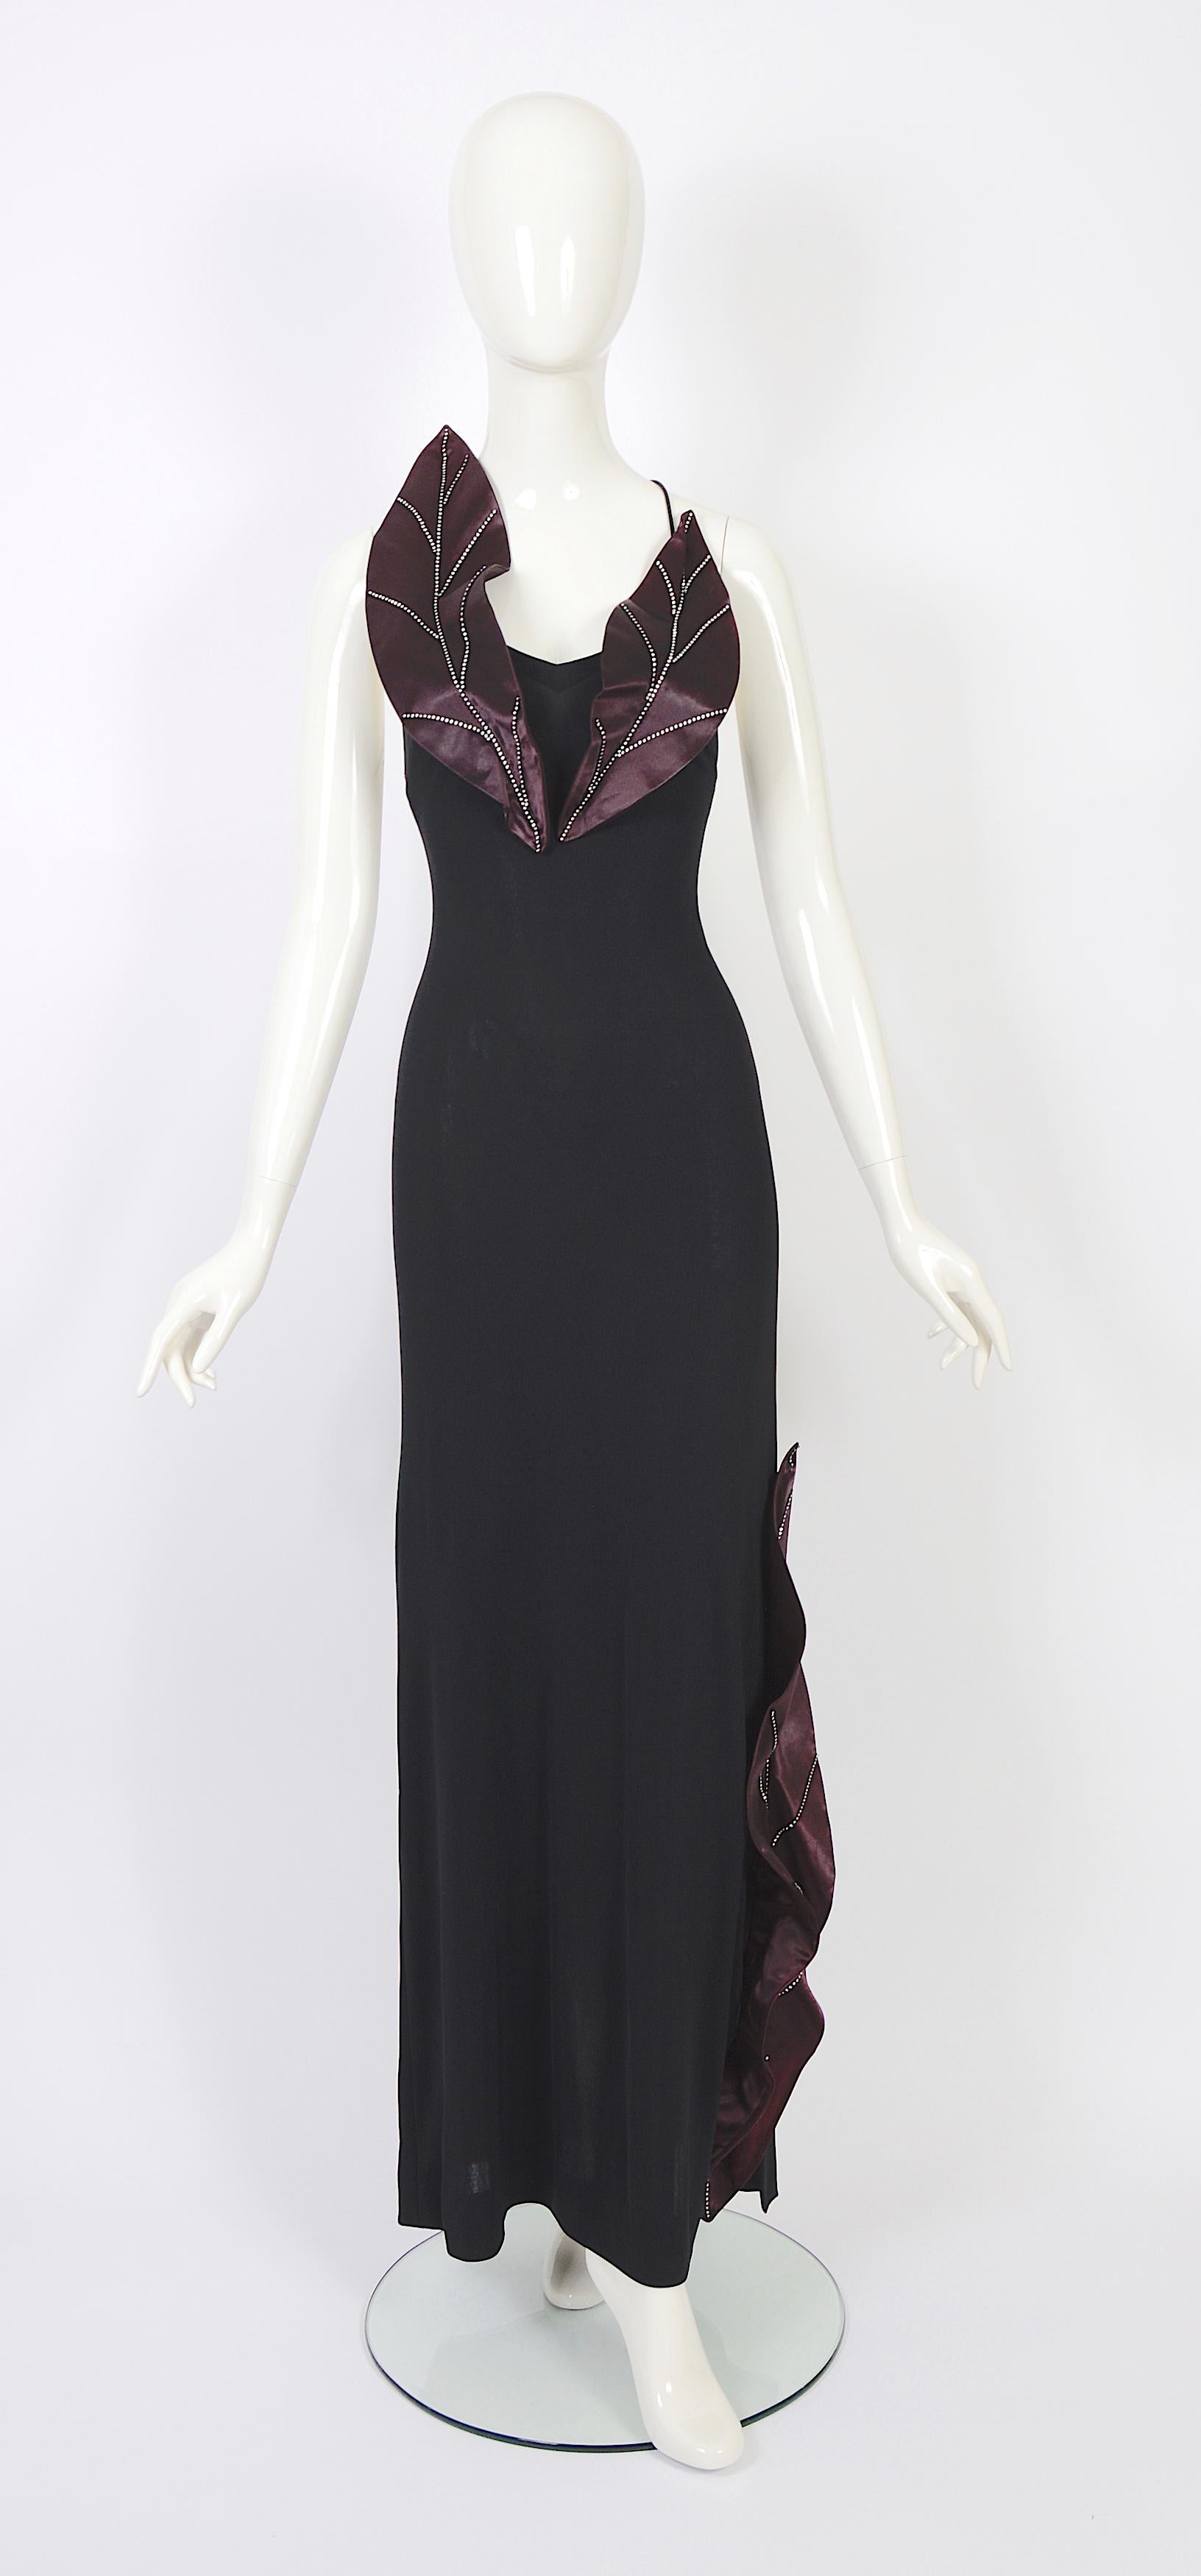 VERLAINE Vintage a le plaisir de vous présenter une exquise robe vintage à dos ouvert des années 1970 de Loris Azzaro.
Fabrice en jersey noir luxueusement doux de soie et de viscose mélangées, cette robe est ornée de feuilles de satin et de diamants